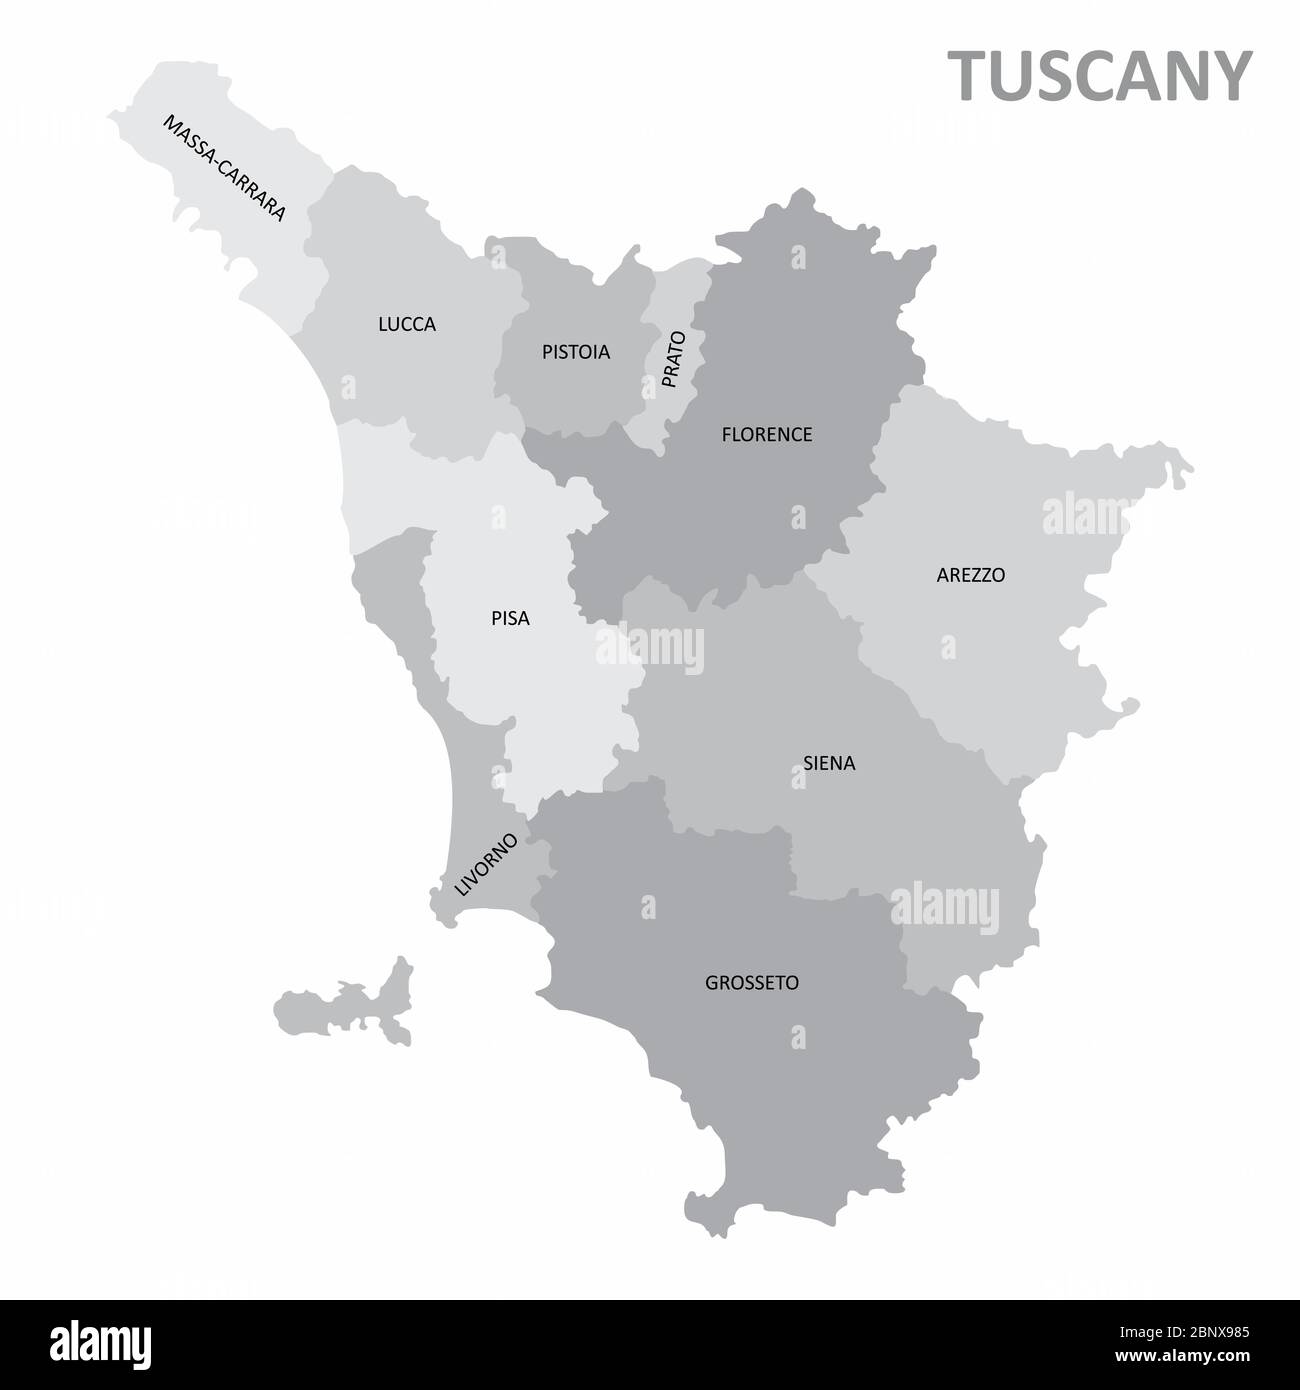 Tuscany region map Stock Vector